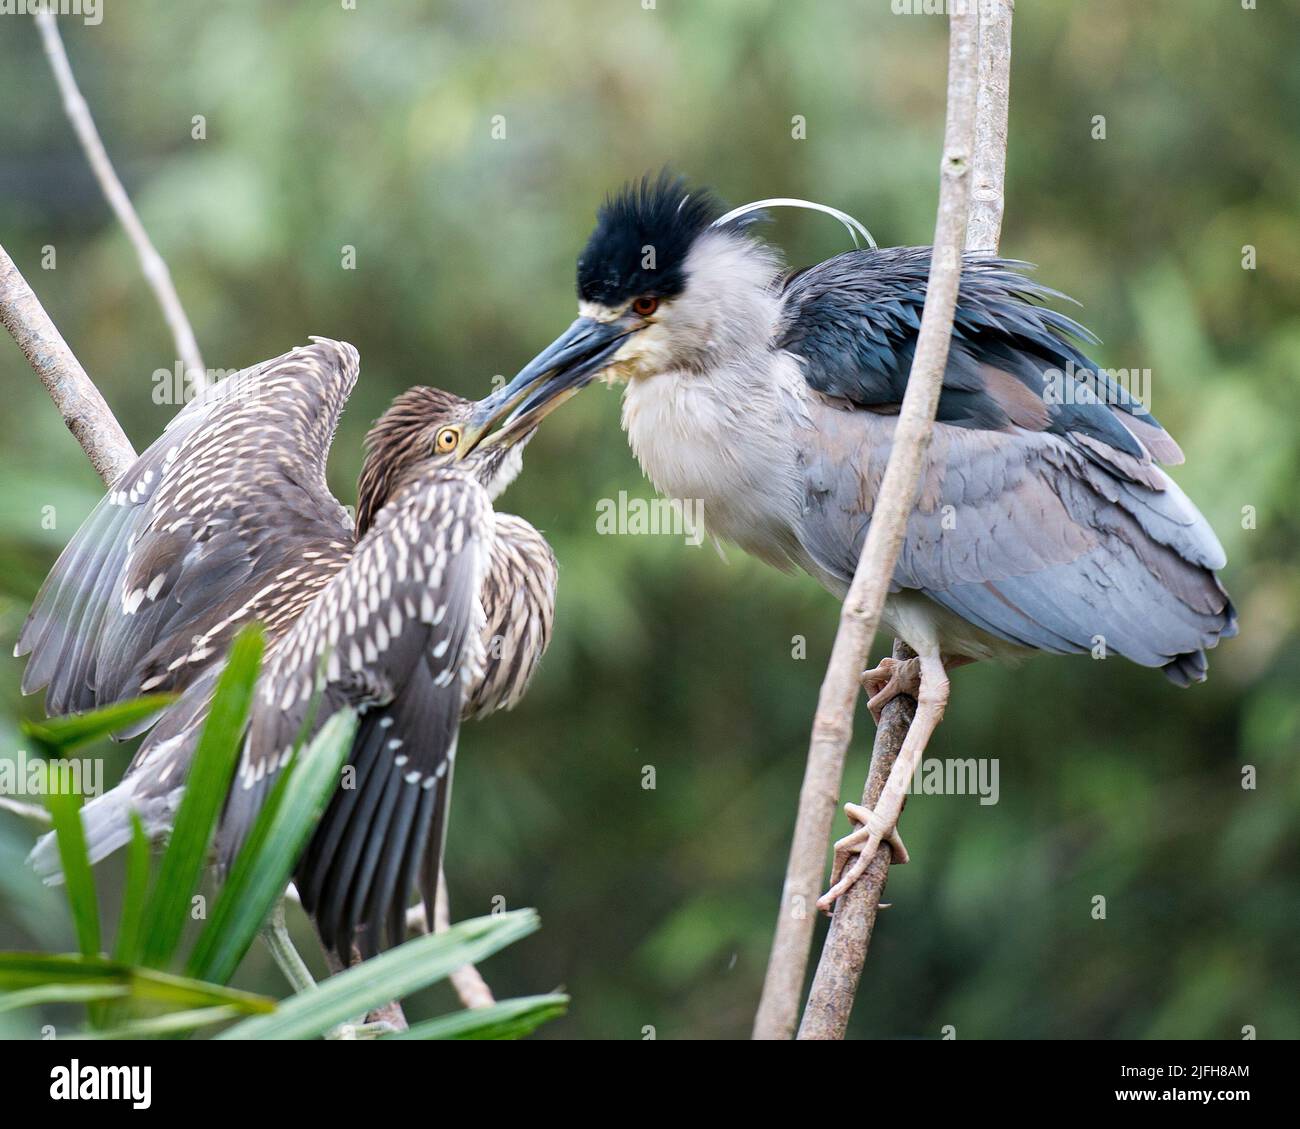 Oiseau de nuit à couronne noire nourrissant le bébé sur le nid avec des ailes étalées avec un arrière-plan flou dans son environnement. Famille Heron. Portrait Banque D'Images